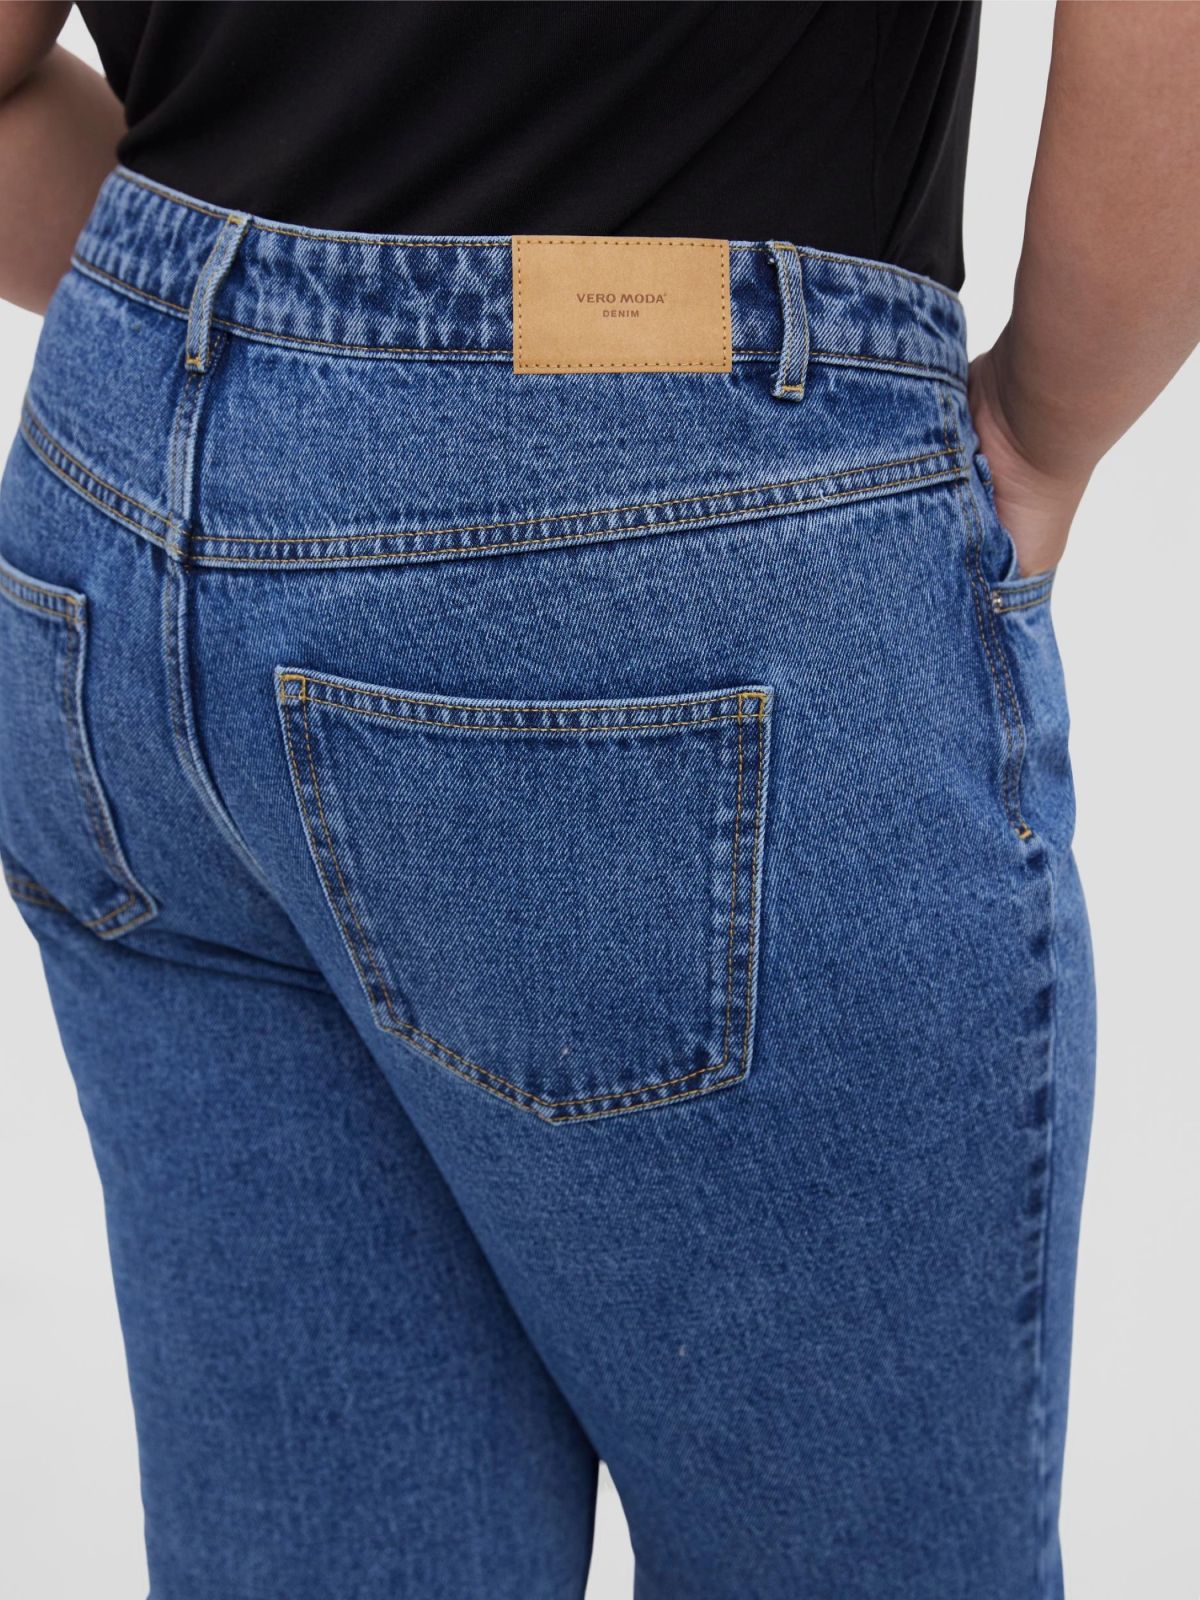  ג'ינס ווש בגזרה מתרחבת / PLUS SIZE של VERO MODA